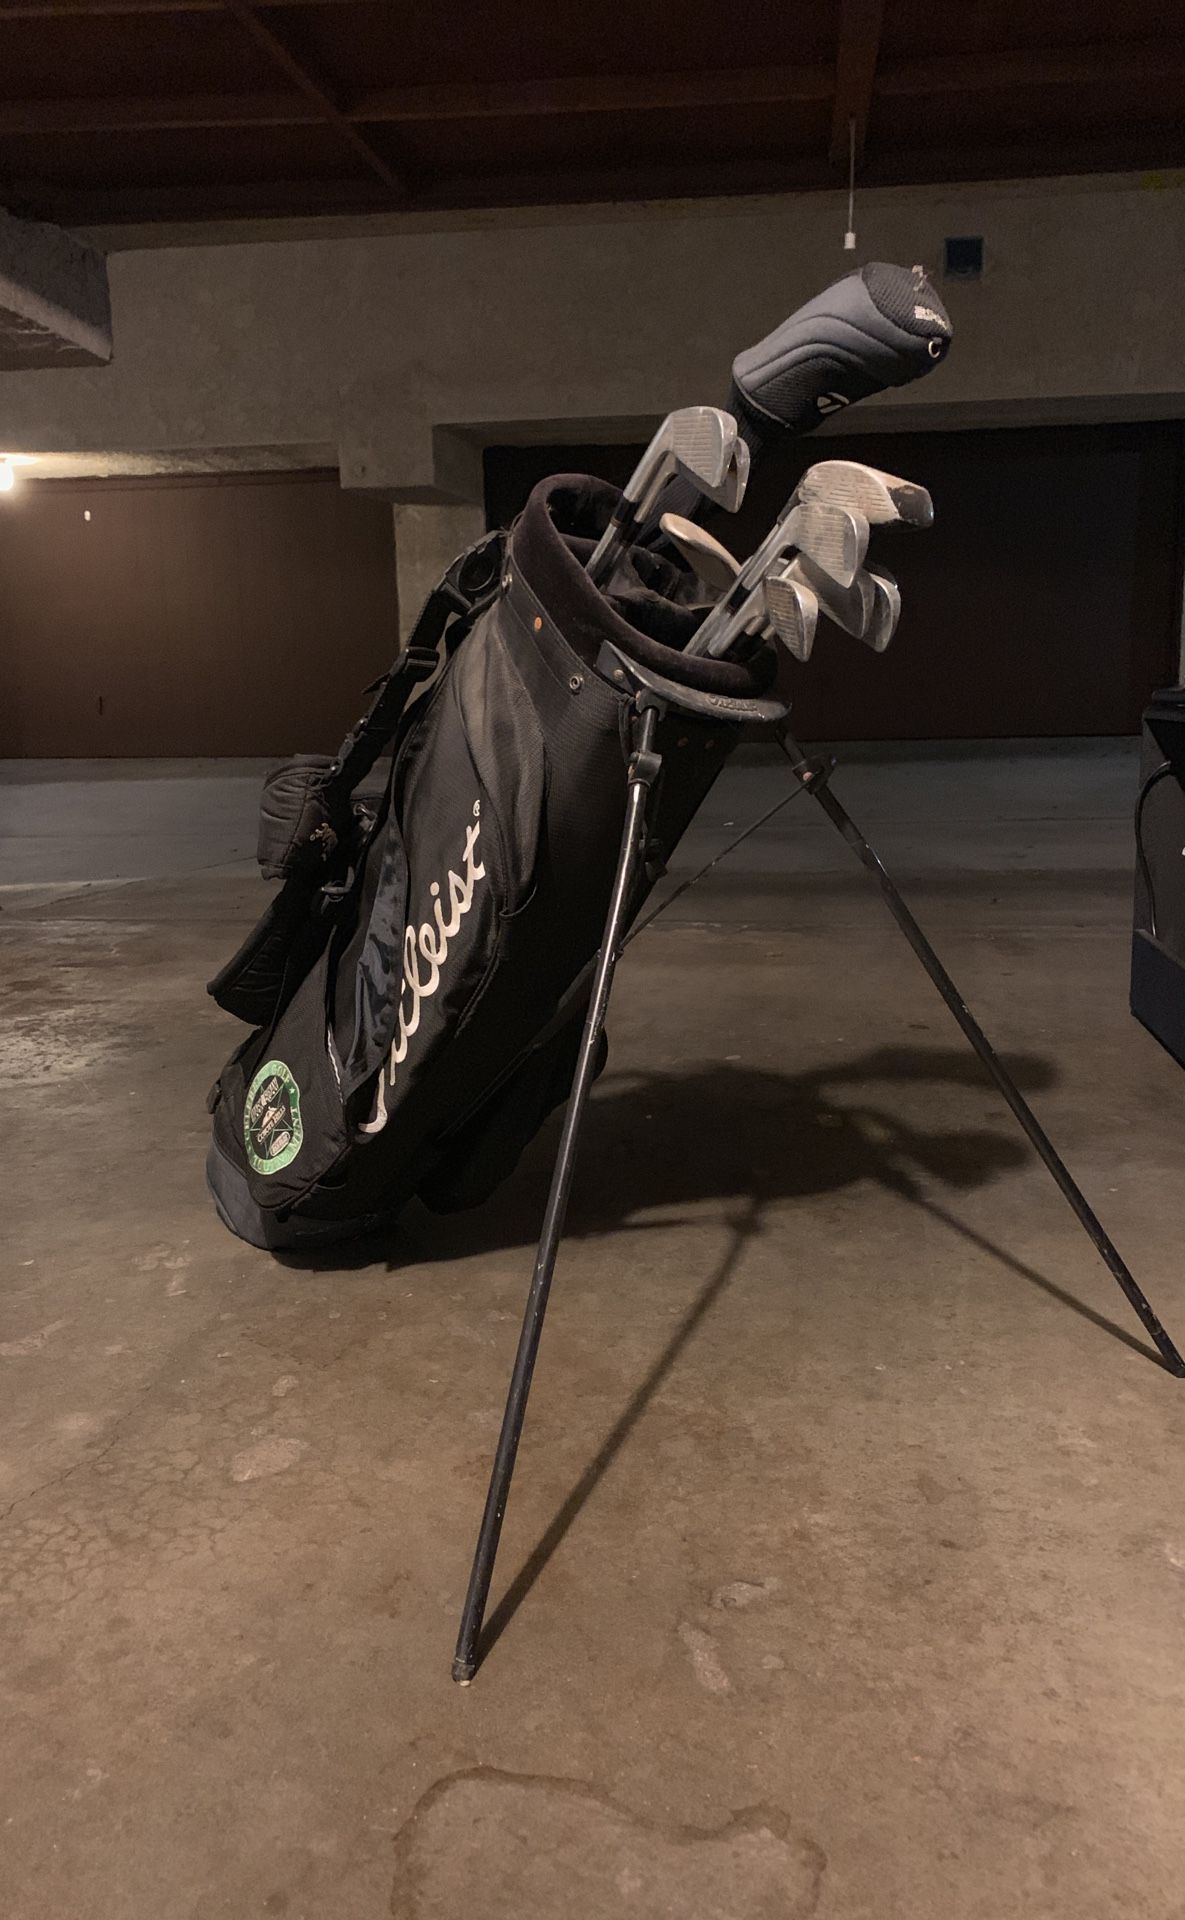 Golf clubs - Precept Tour Premium set and bag